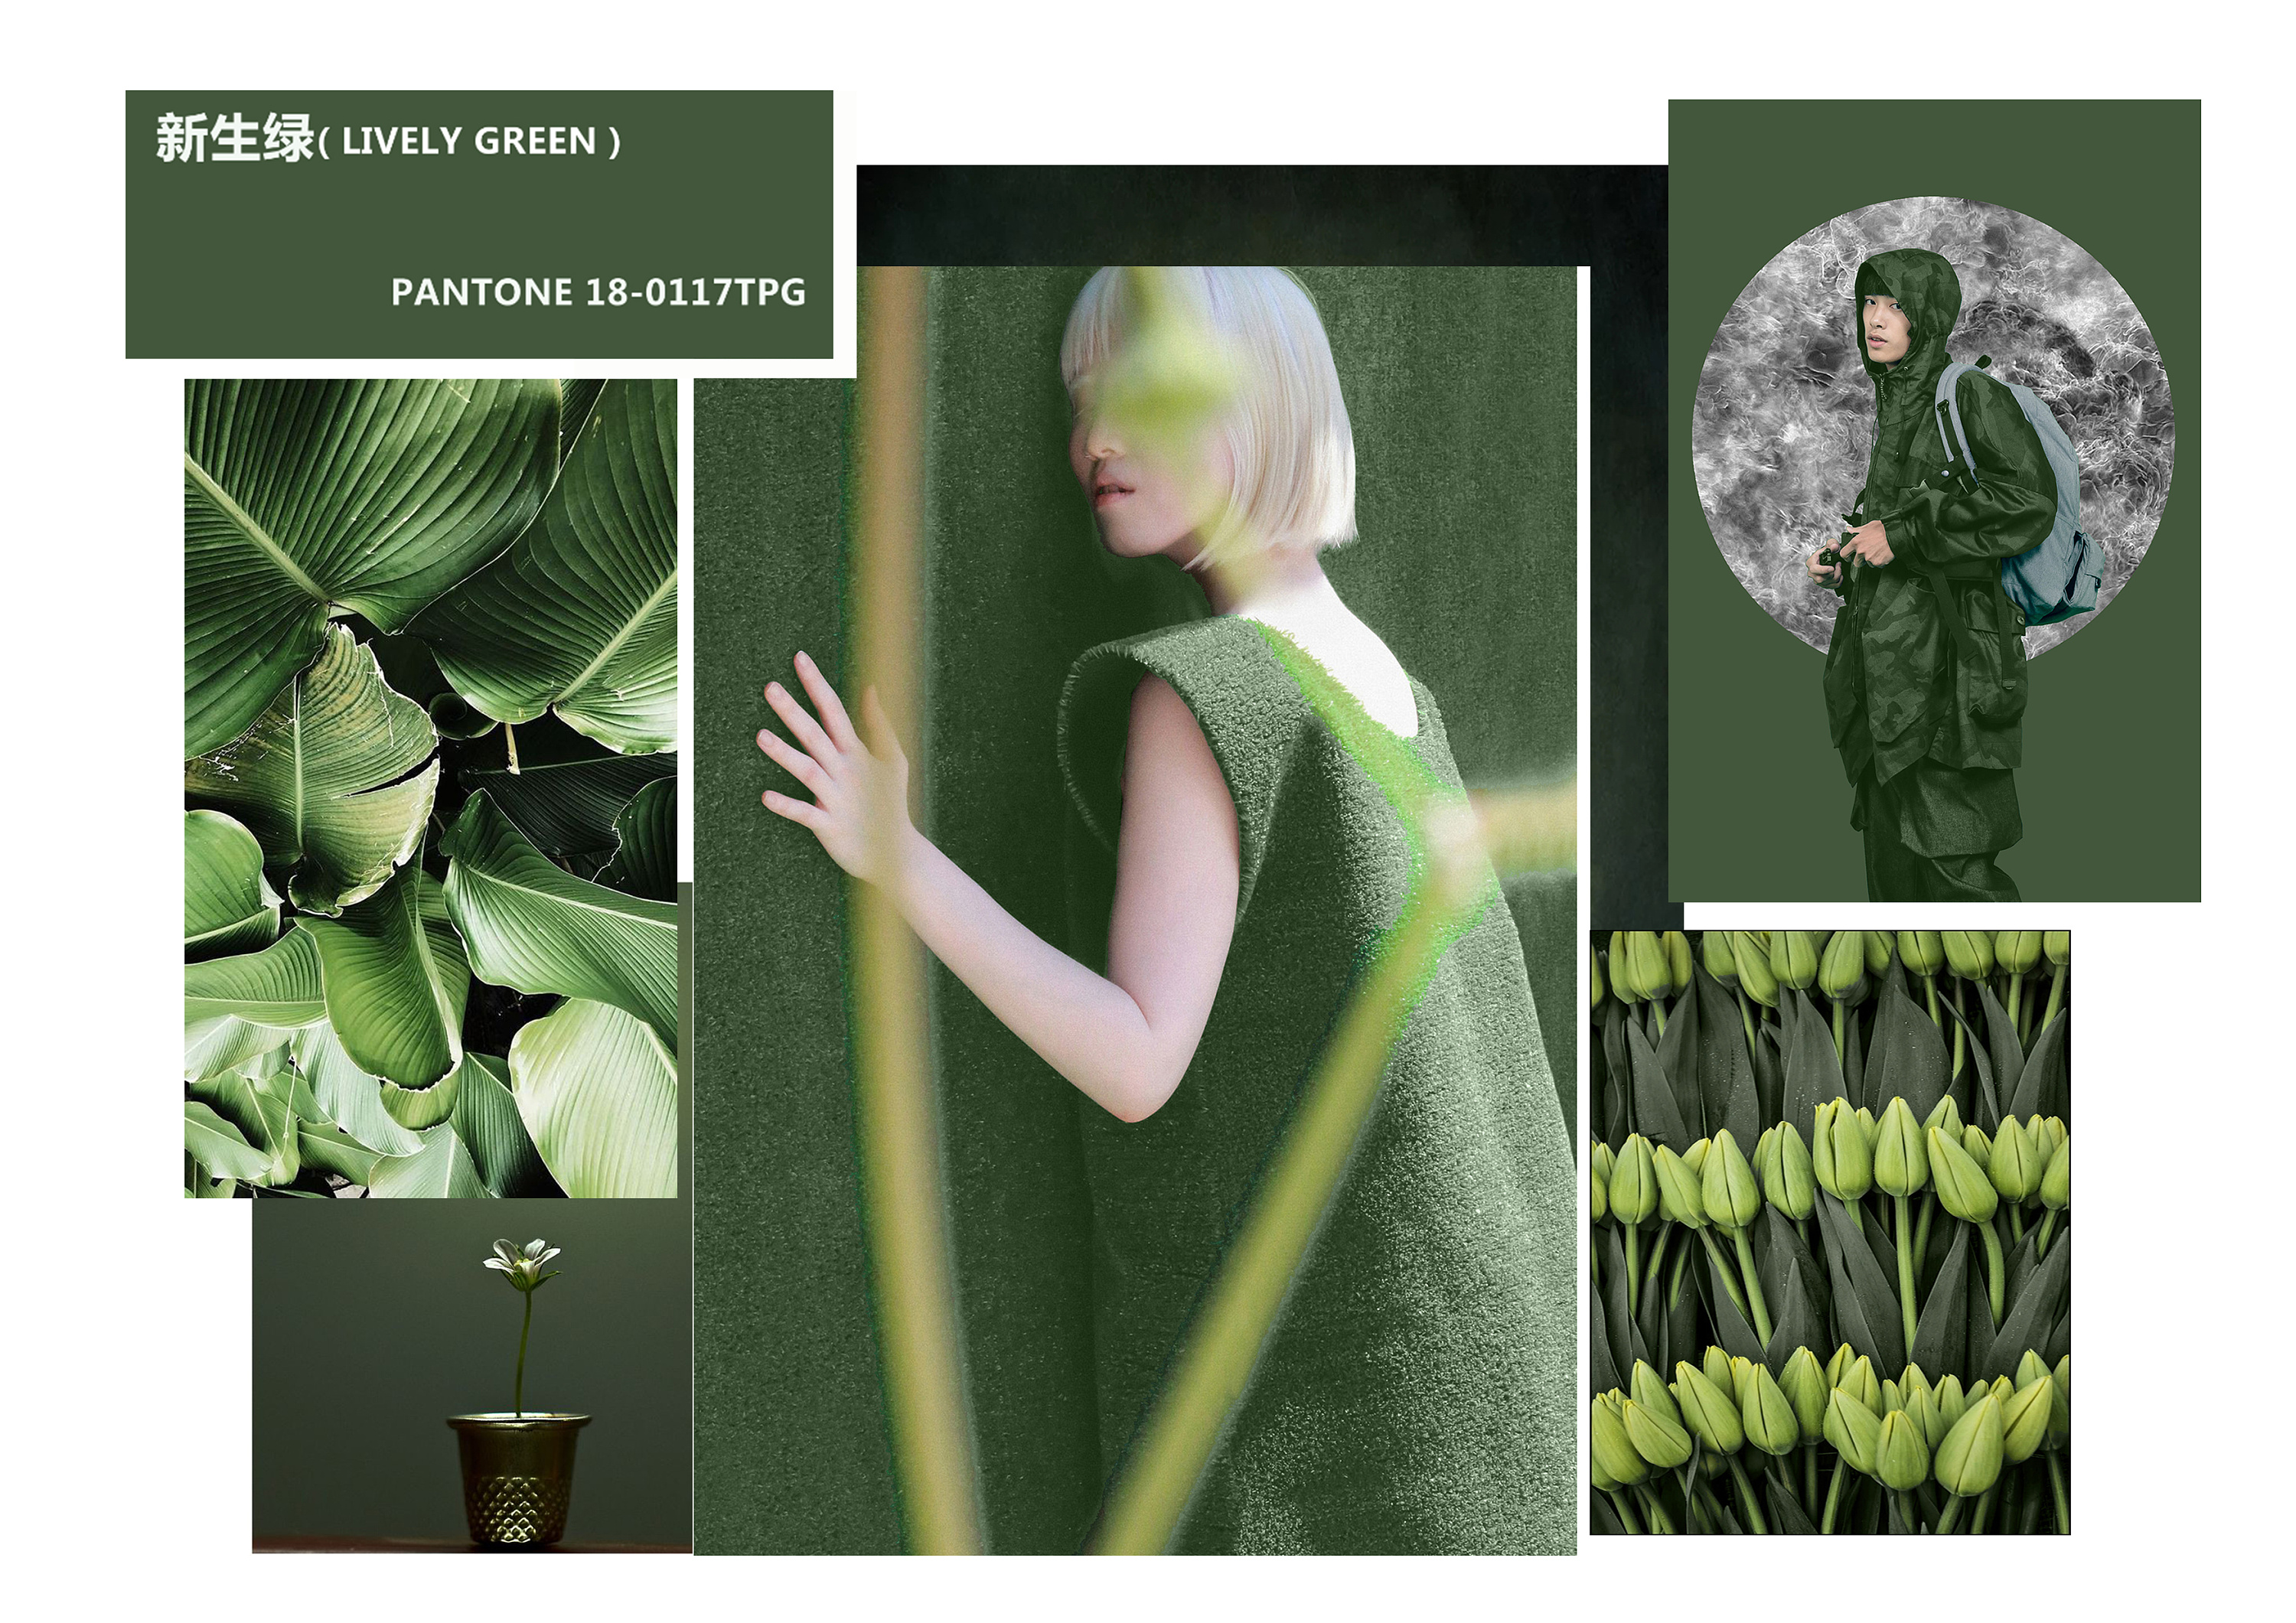 2020秋冬最綠色流行 綠色時尚穿搭指南 | 《瘋時尚數位媒體》熱愛時尚、美好生活的提案者